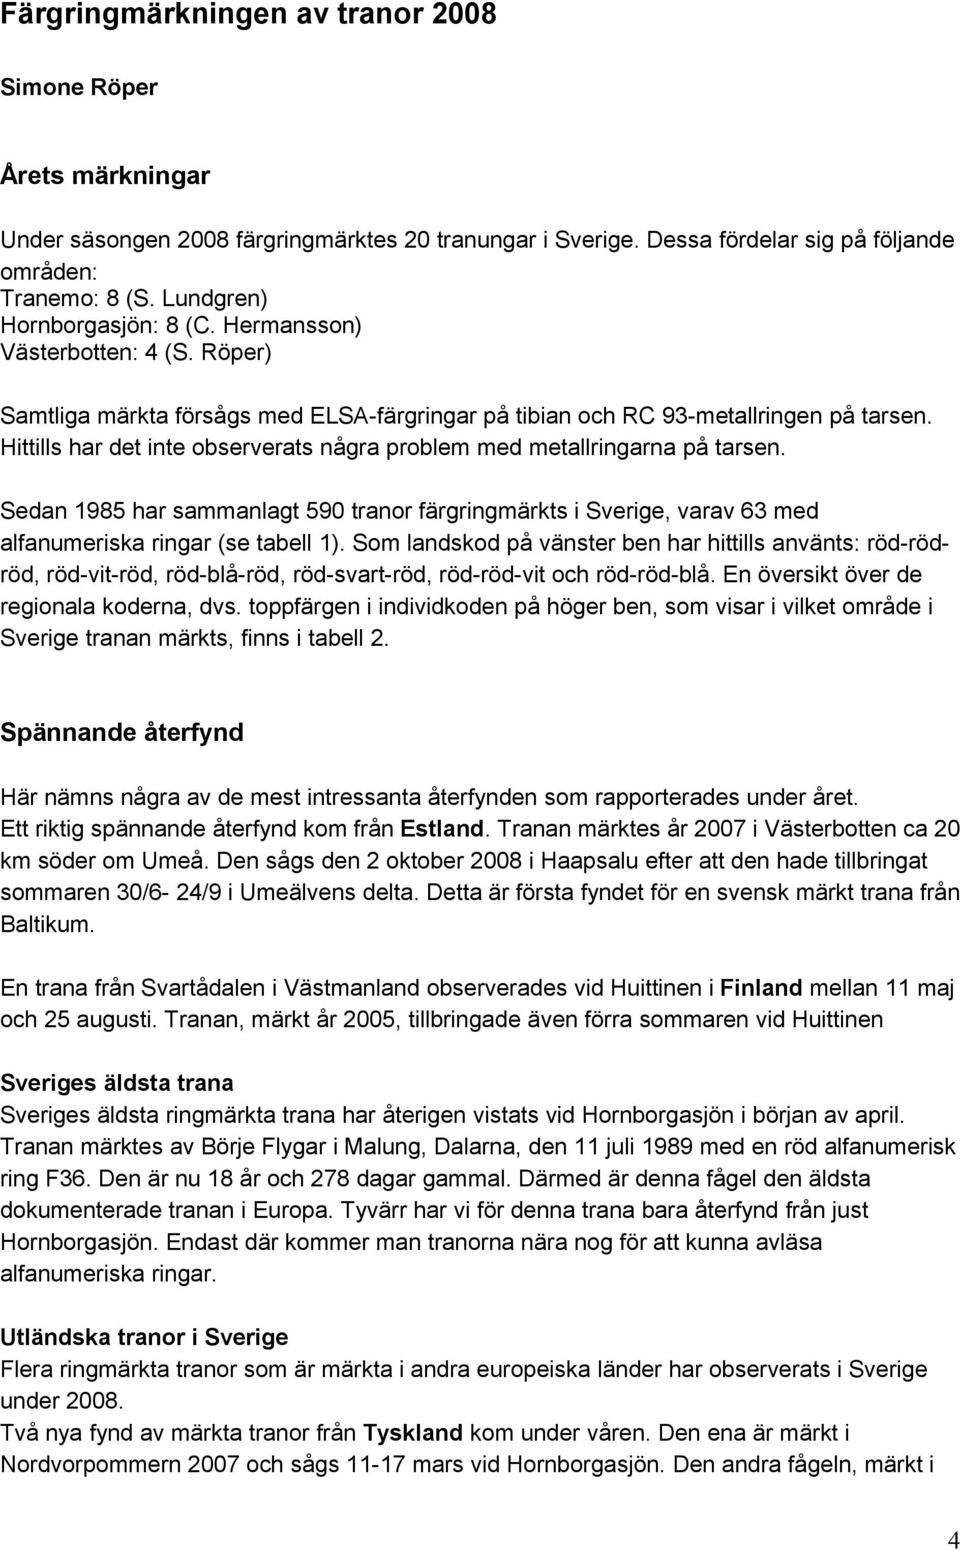 Hittills har det inte observerats några problem med metallringarna på tarsen. Sedan 1985 har sammanlagt 590 tranor färgringmärkts i Sverige, varav 63 med alfanumeriska ringar (se tabell 1).